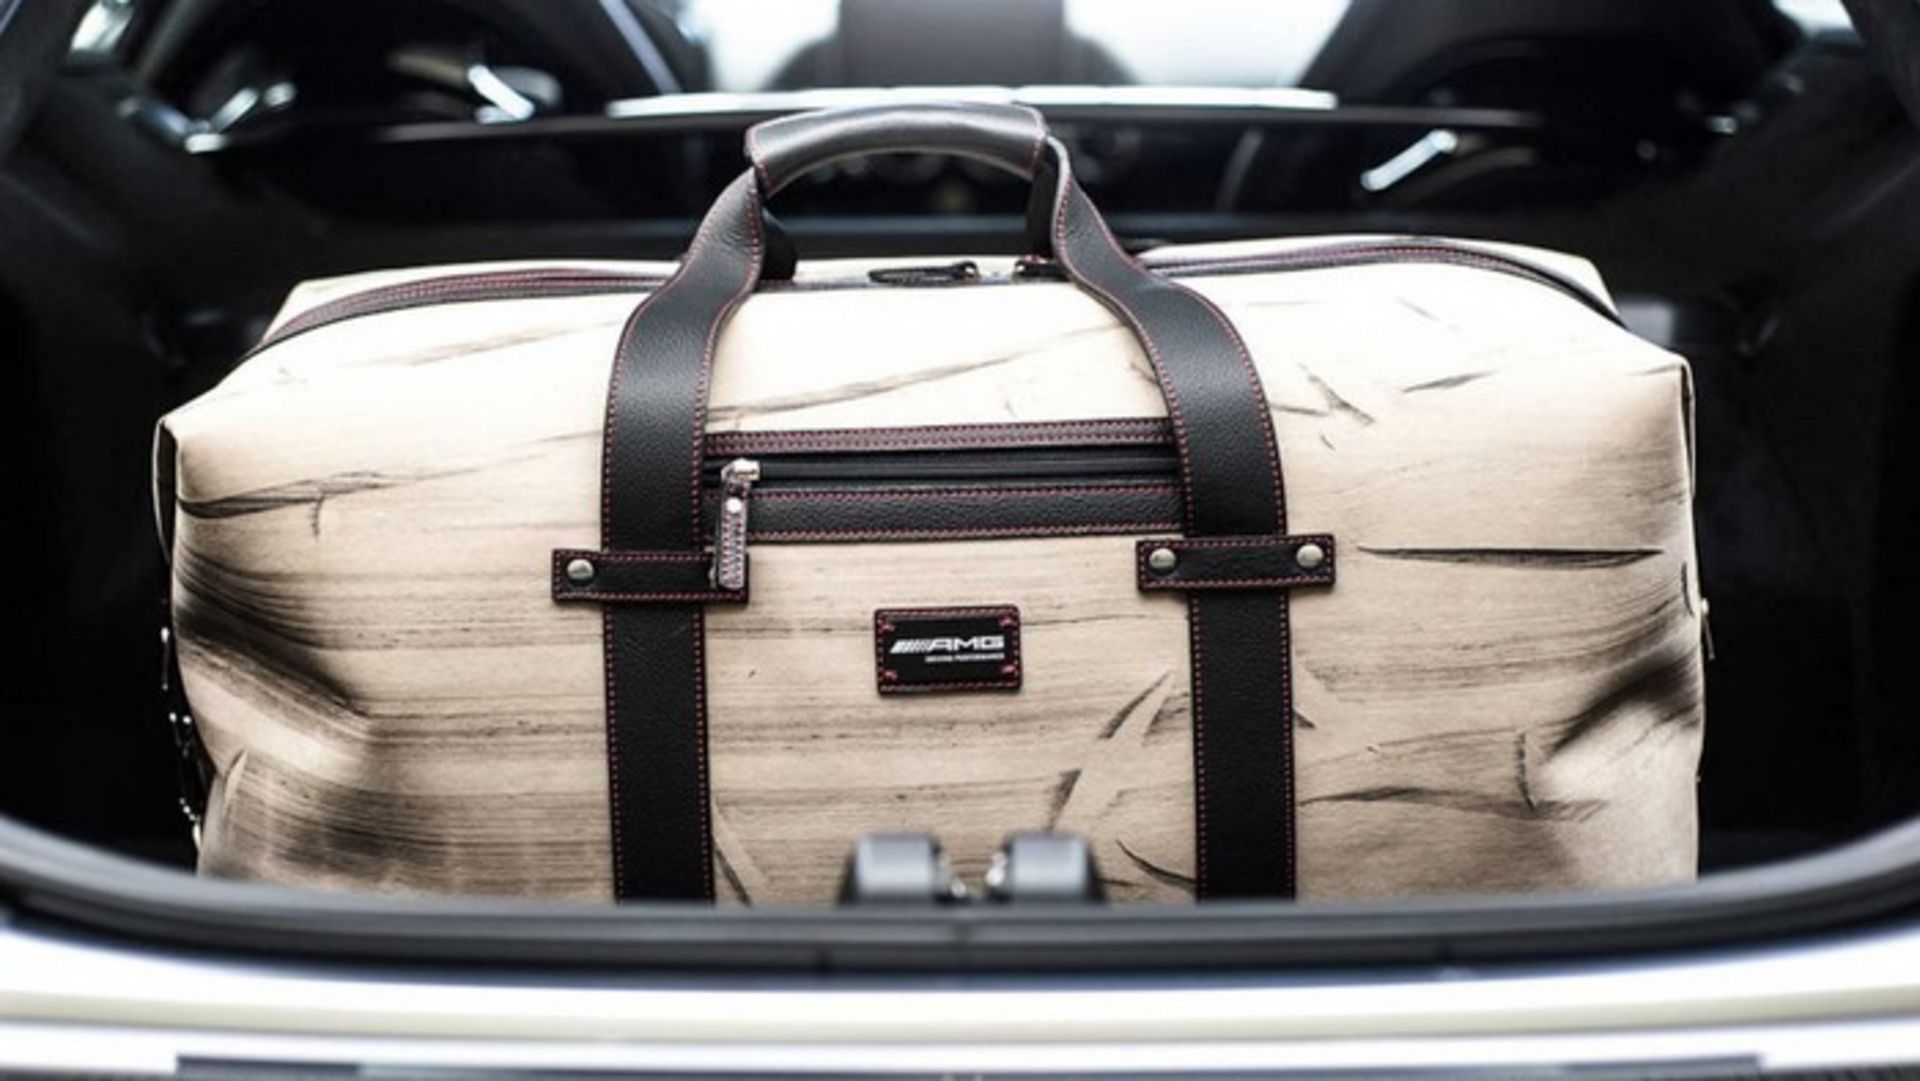 Mercedes-AMG: Destroy vs Beauty Burnout Bags